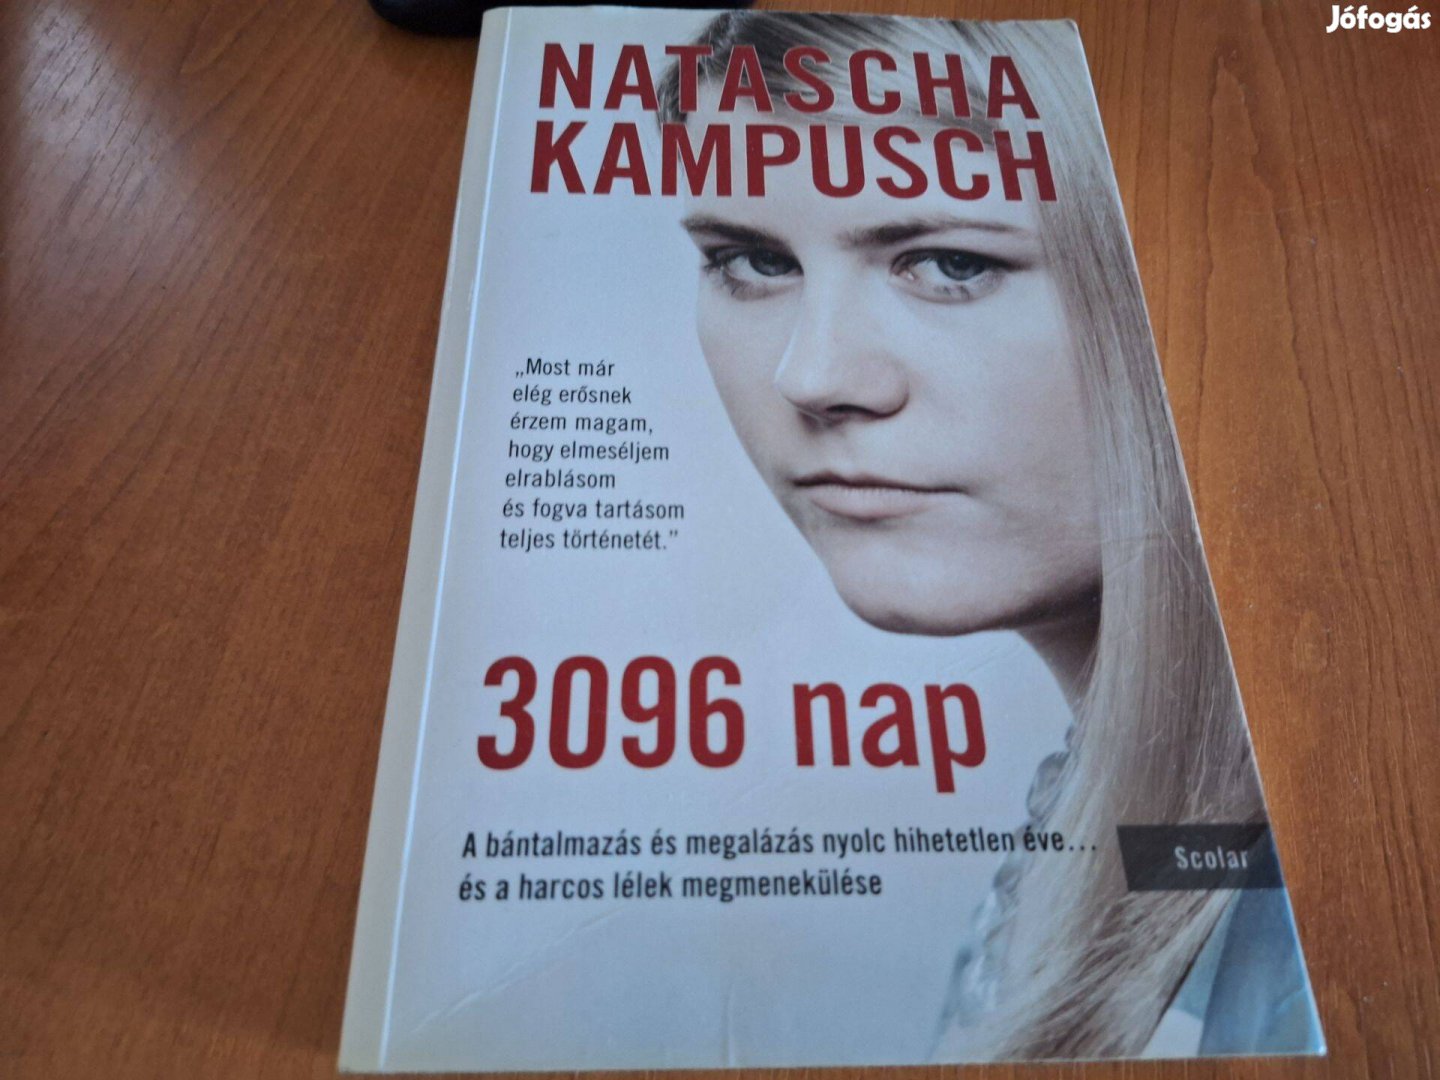 Natascha Kampusch: 3096 nap. 4900.-Ft